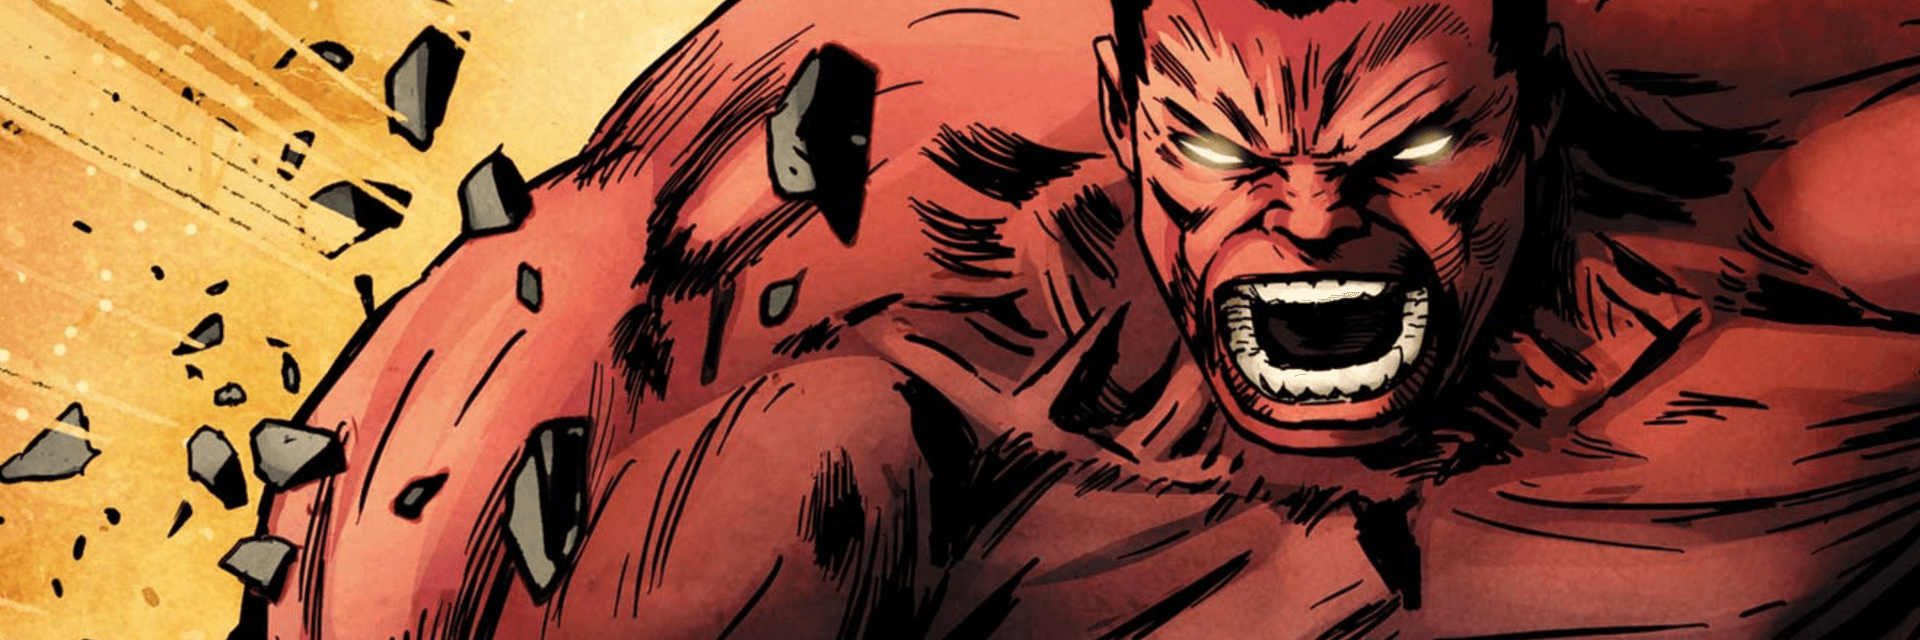 Red Hulk (General Thaddeus E. Ross)